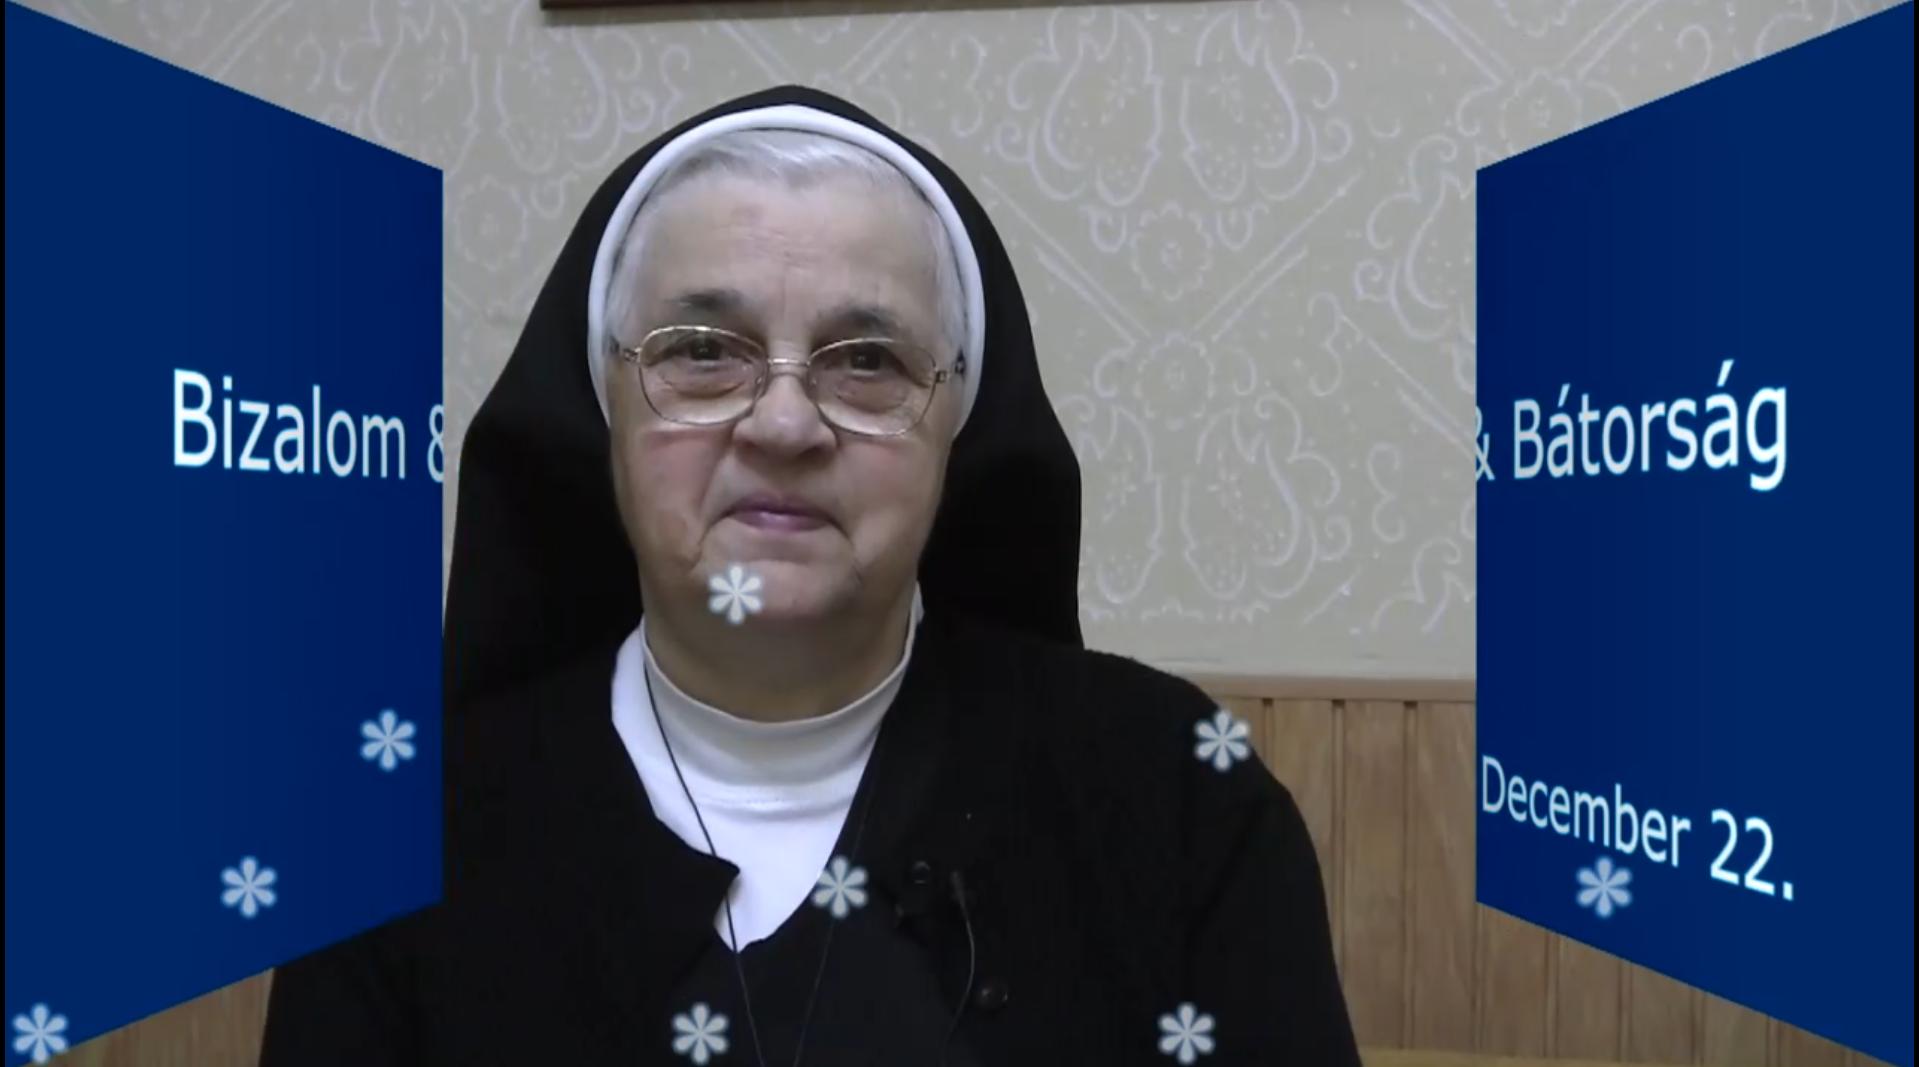 December 22. M. Bernadette nővér gondolatai - Egész életünk egy advent 2.